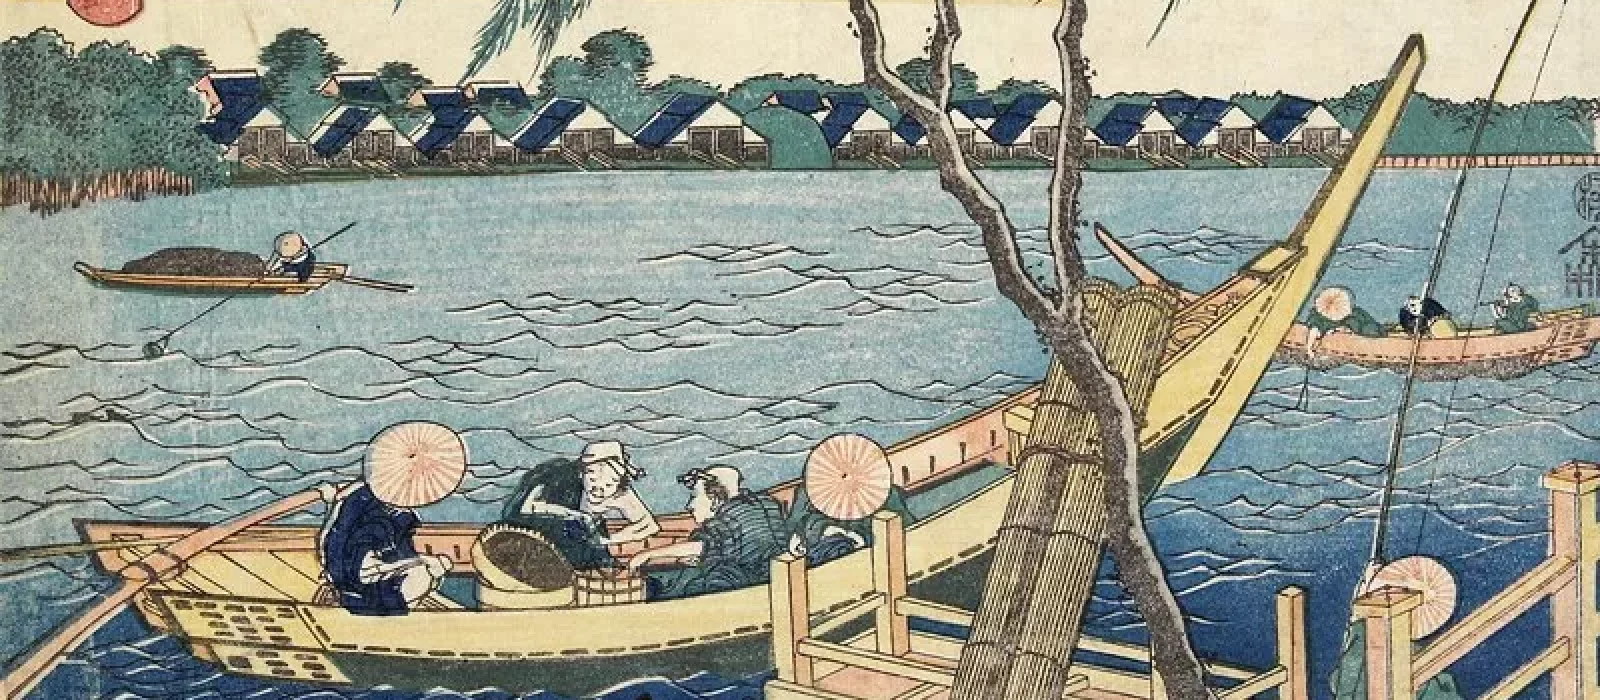 Fishing in the Miyato River/ 宮戸川長縄 Miyatogawa Nagawa, ca. 1832 - 1834 by Hokusai